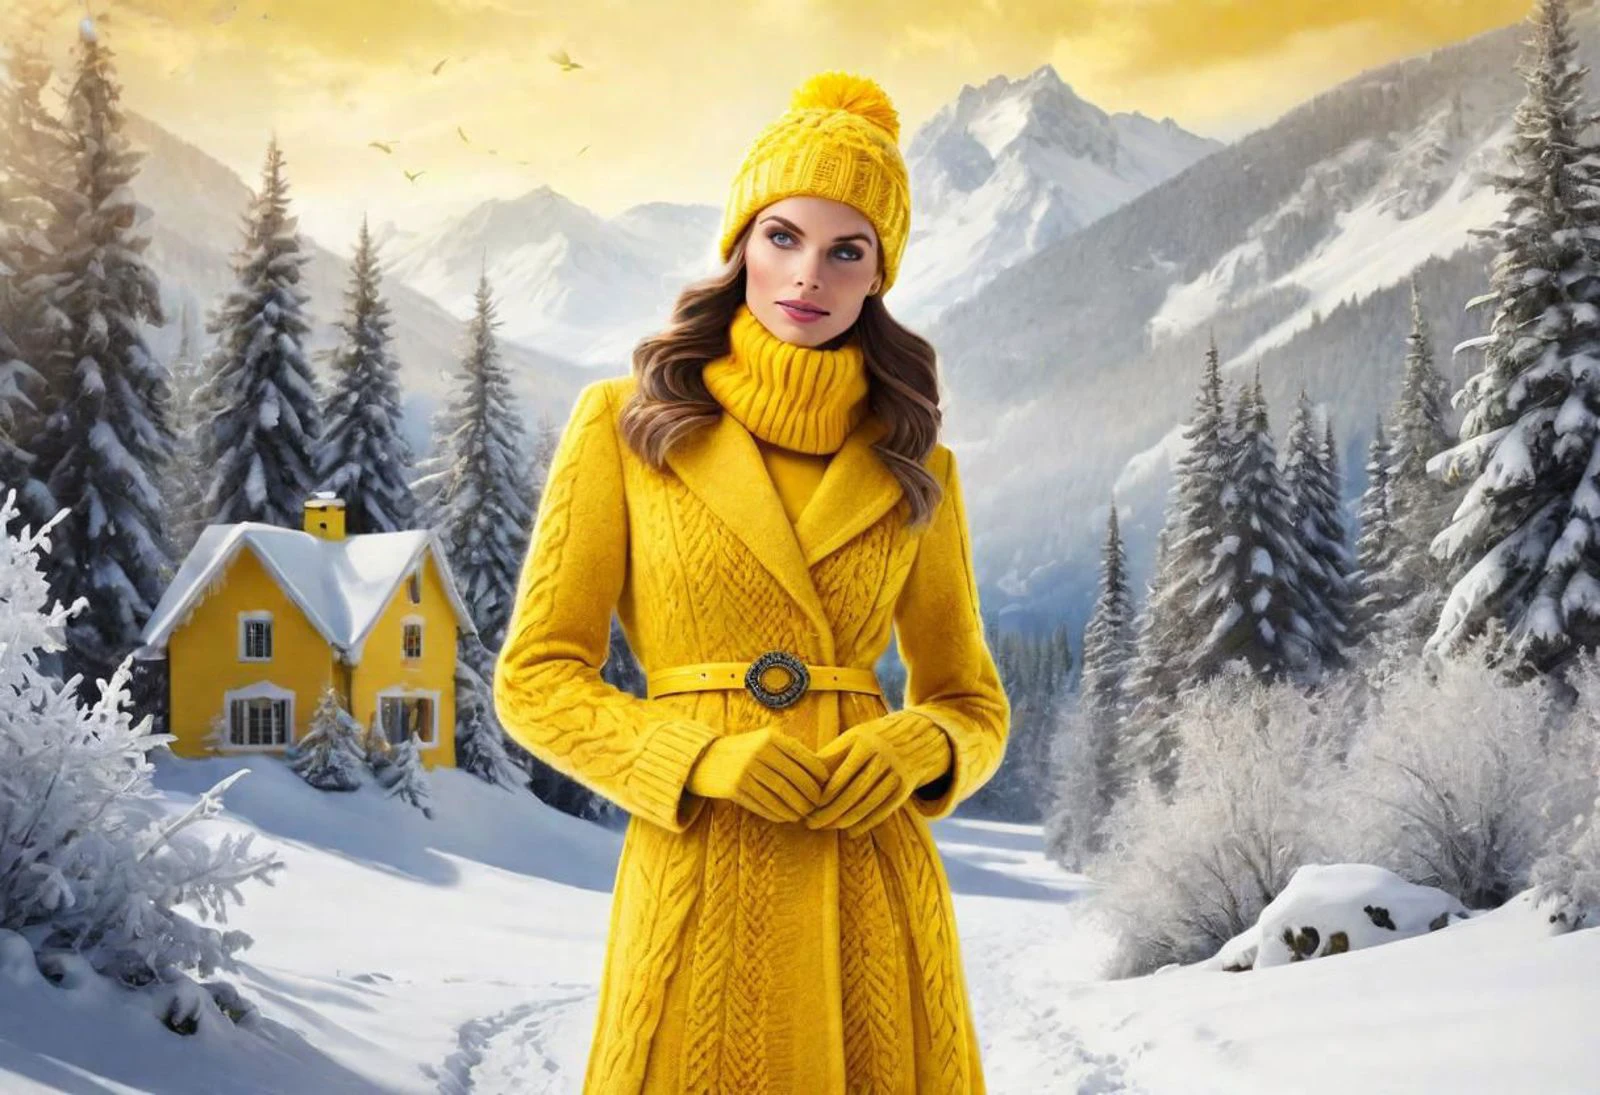 "Crea una imagen que muestre a una mujer deslumbrante vestida de amarillo vibrante., encarnando la esencia del invierno para el equipo amarillo. Imagina una escena en la que ella esté elegantemente adornada con ropa de invierno., rodeado de paisajes nevados y acentos helados. Ilumina la belleza de la temporada y muestra el espíritu vibrante del Equipo Amarillo en el contexto invernal.."